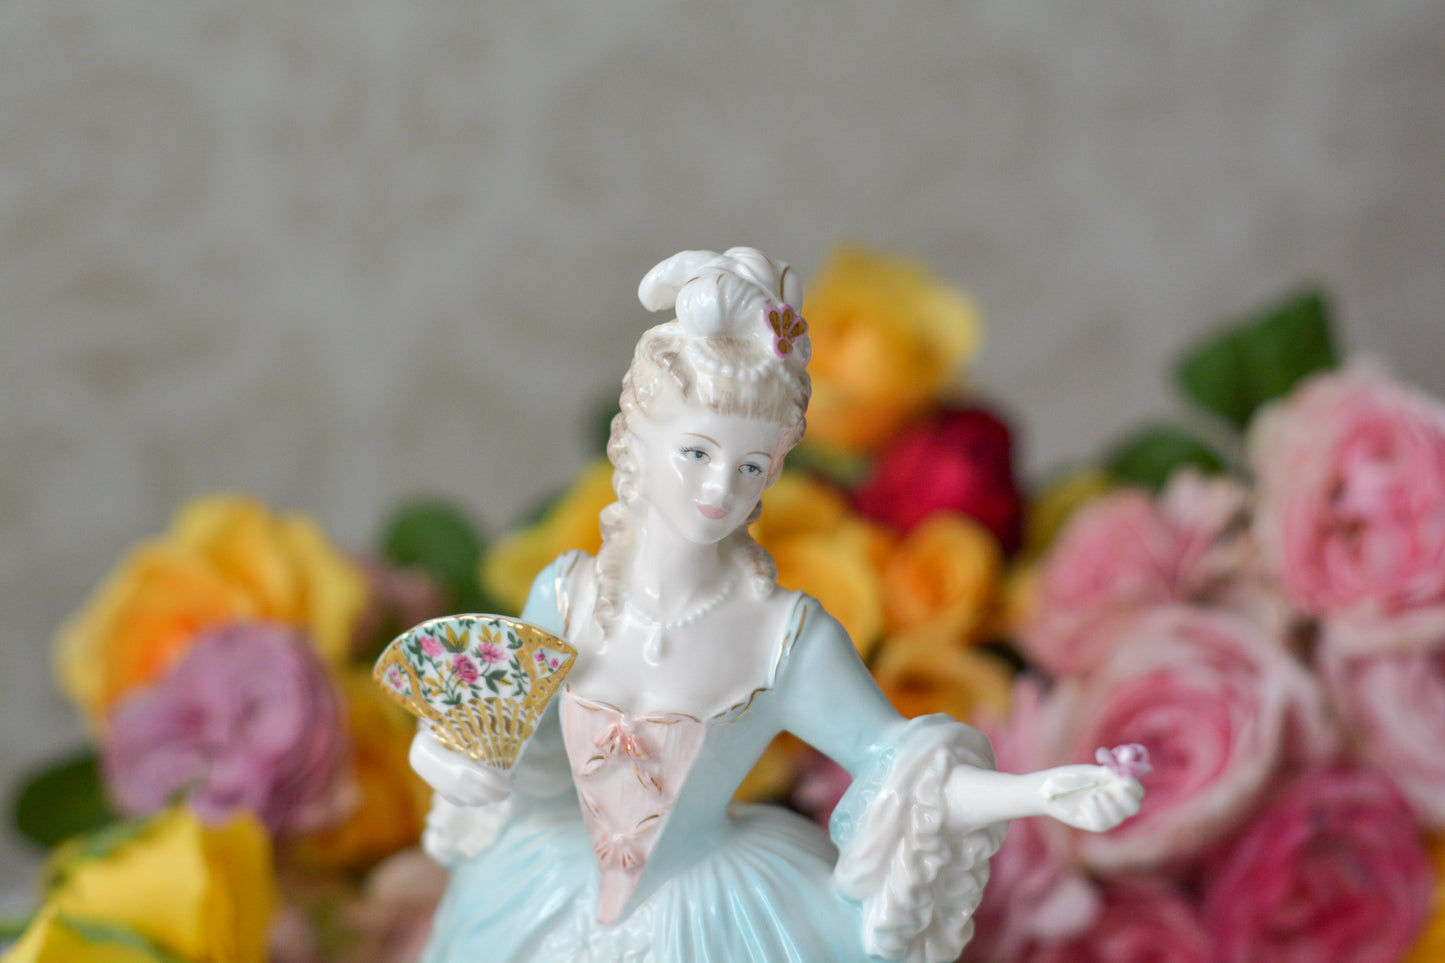 コールポートのマリーアントワネットのフィギュリンです。フィギュリンとは陶器の人形で、ポーセリンドールとも言います。とても優雅なフィギュリンで人気のあるお品です。